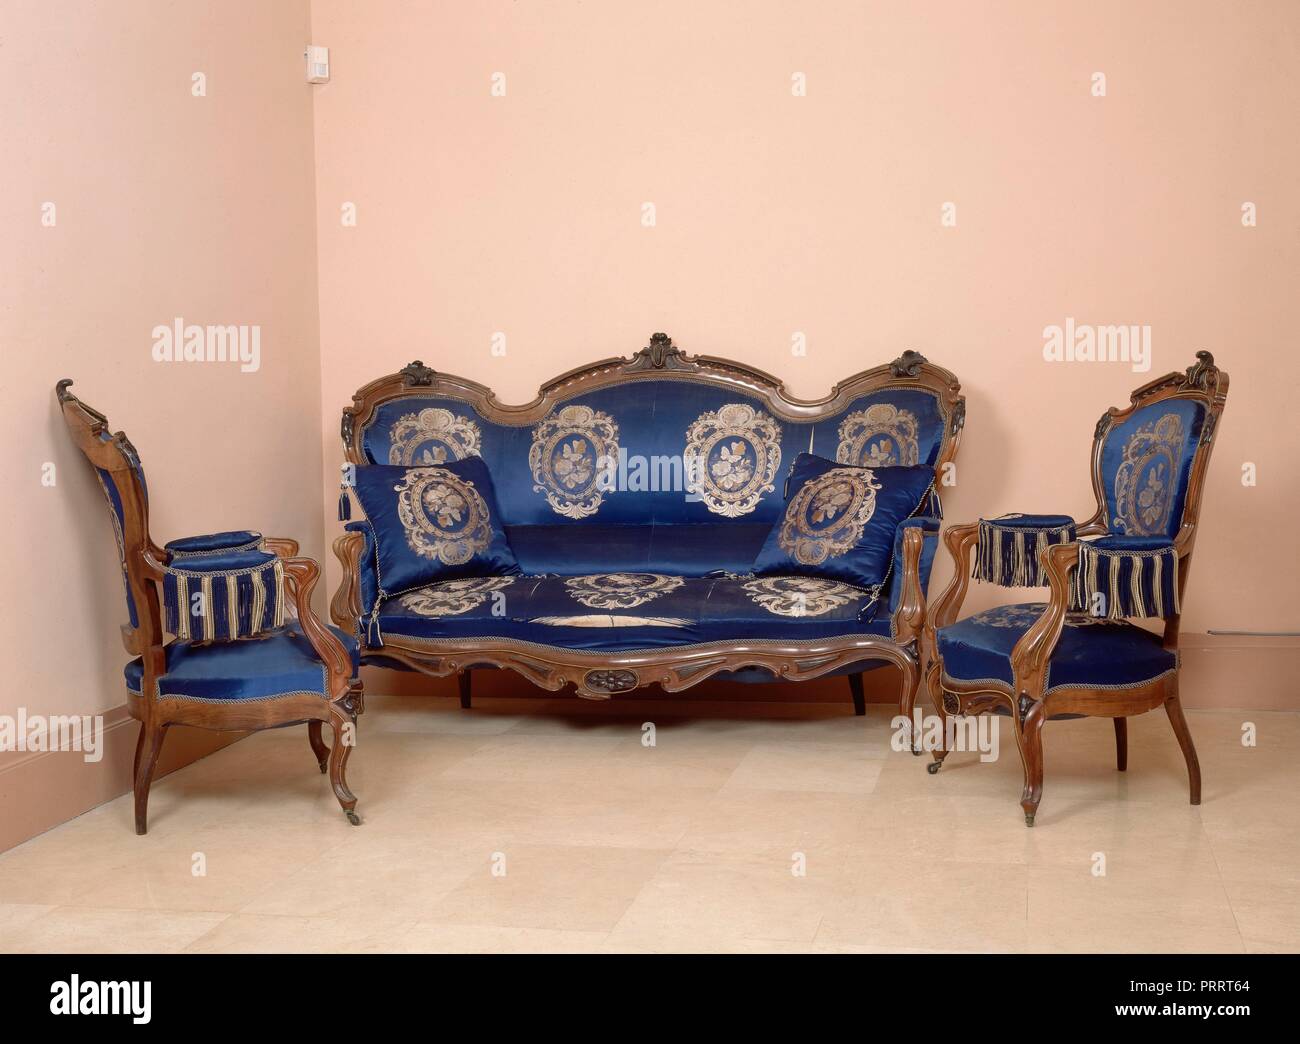 MOBILIARIO ISABELINO - sofá y sillones con tapiceria de raso - SIGLO XIX.  Ubicación: Museo Romantico-objeto. MADRID. España Fotografía de stock -  Alamy